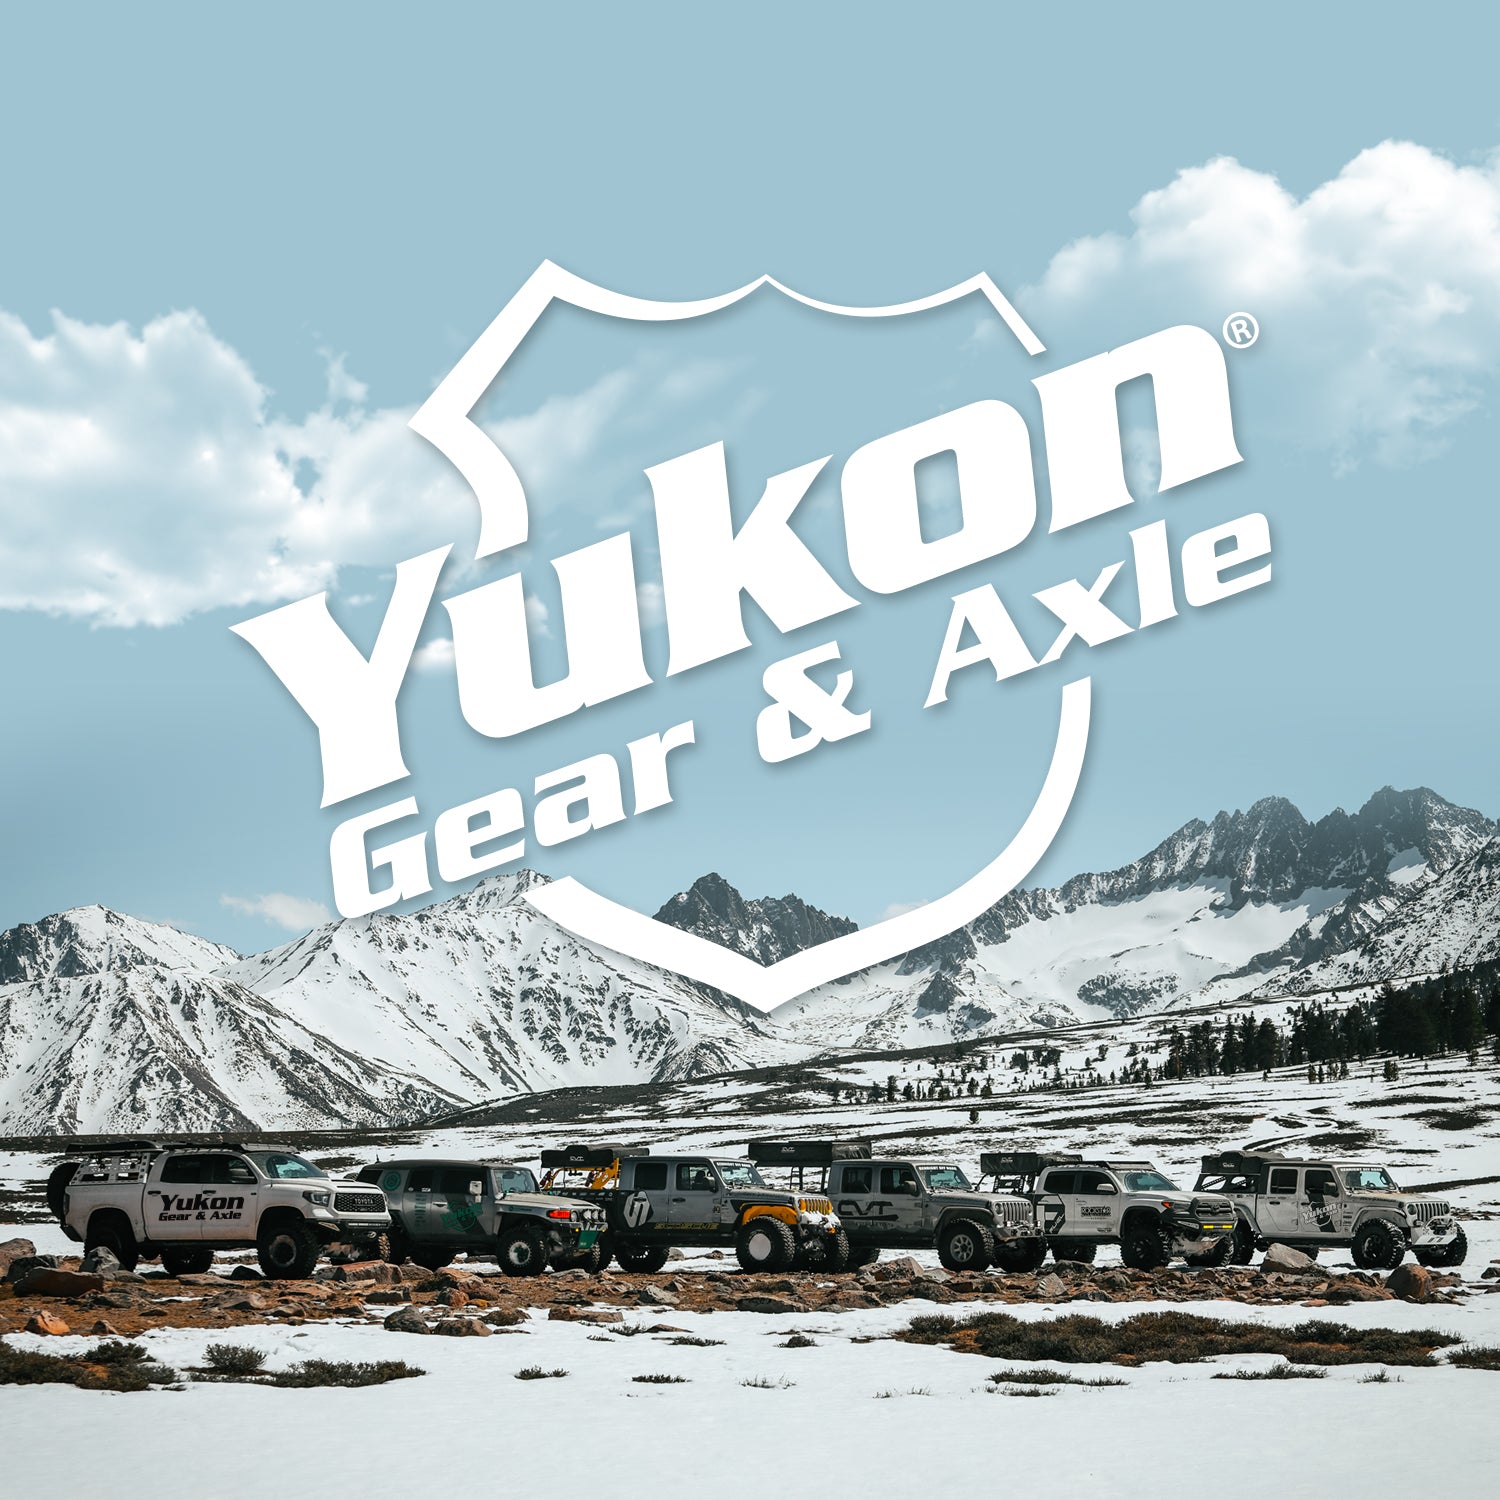 Yukon Gear American Motors Jeep (4WD/RWD) Differential End Yoke - Rear Differential YYM35-1330-26L